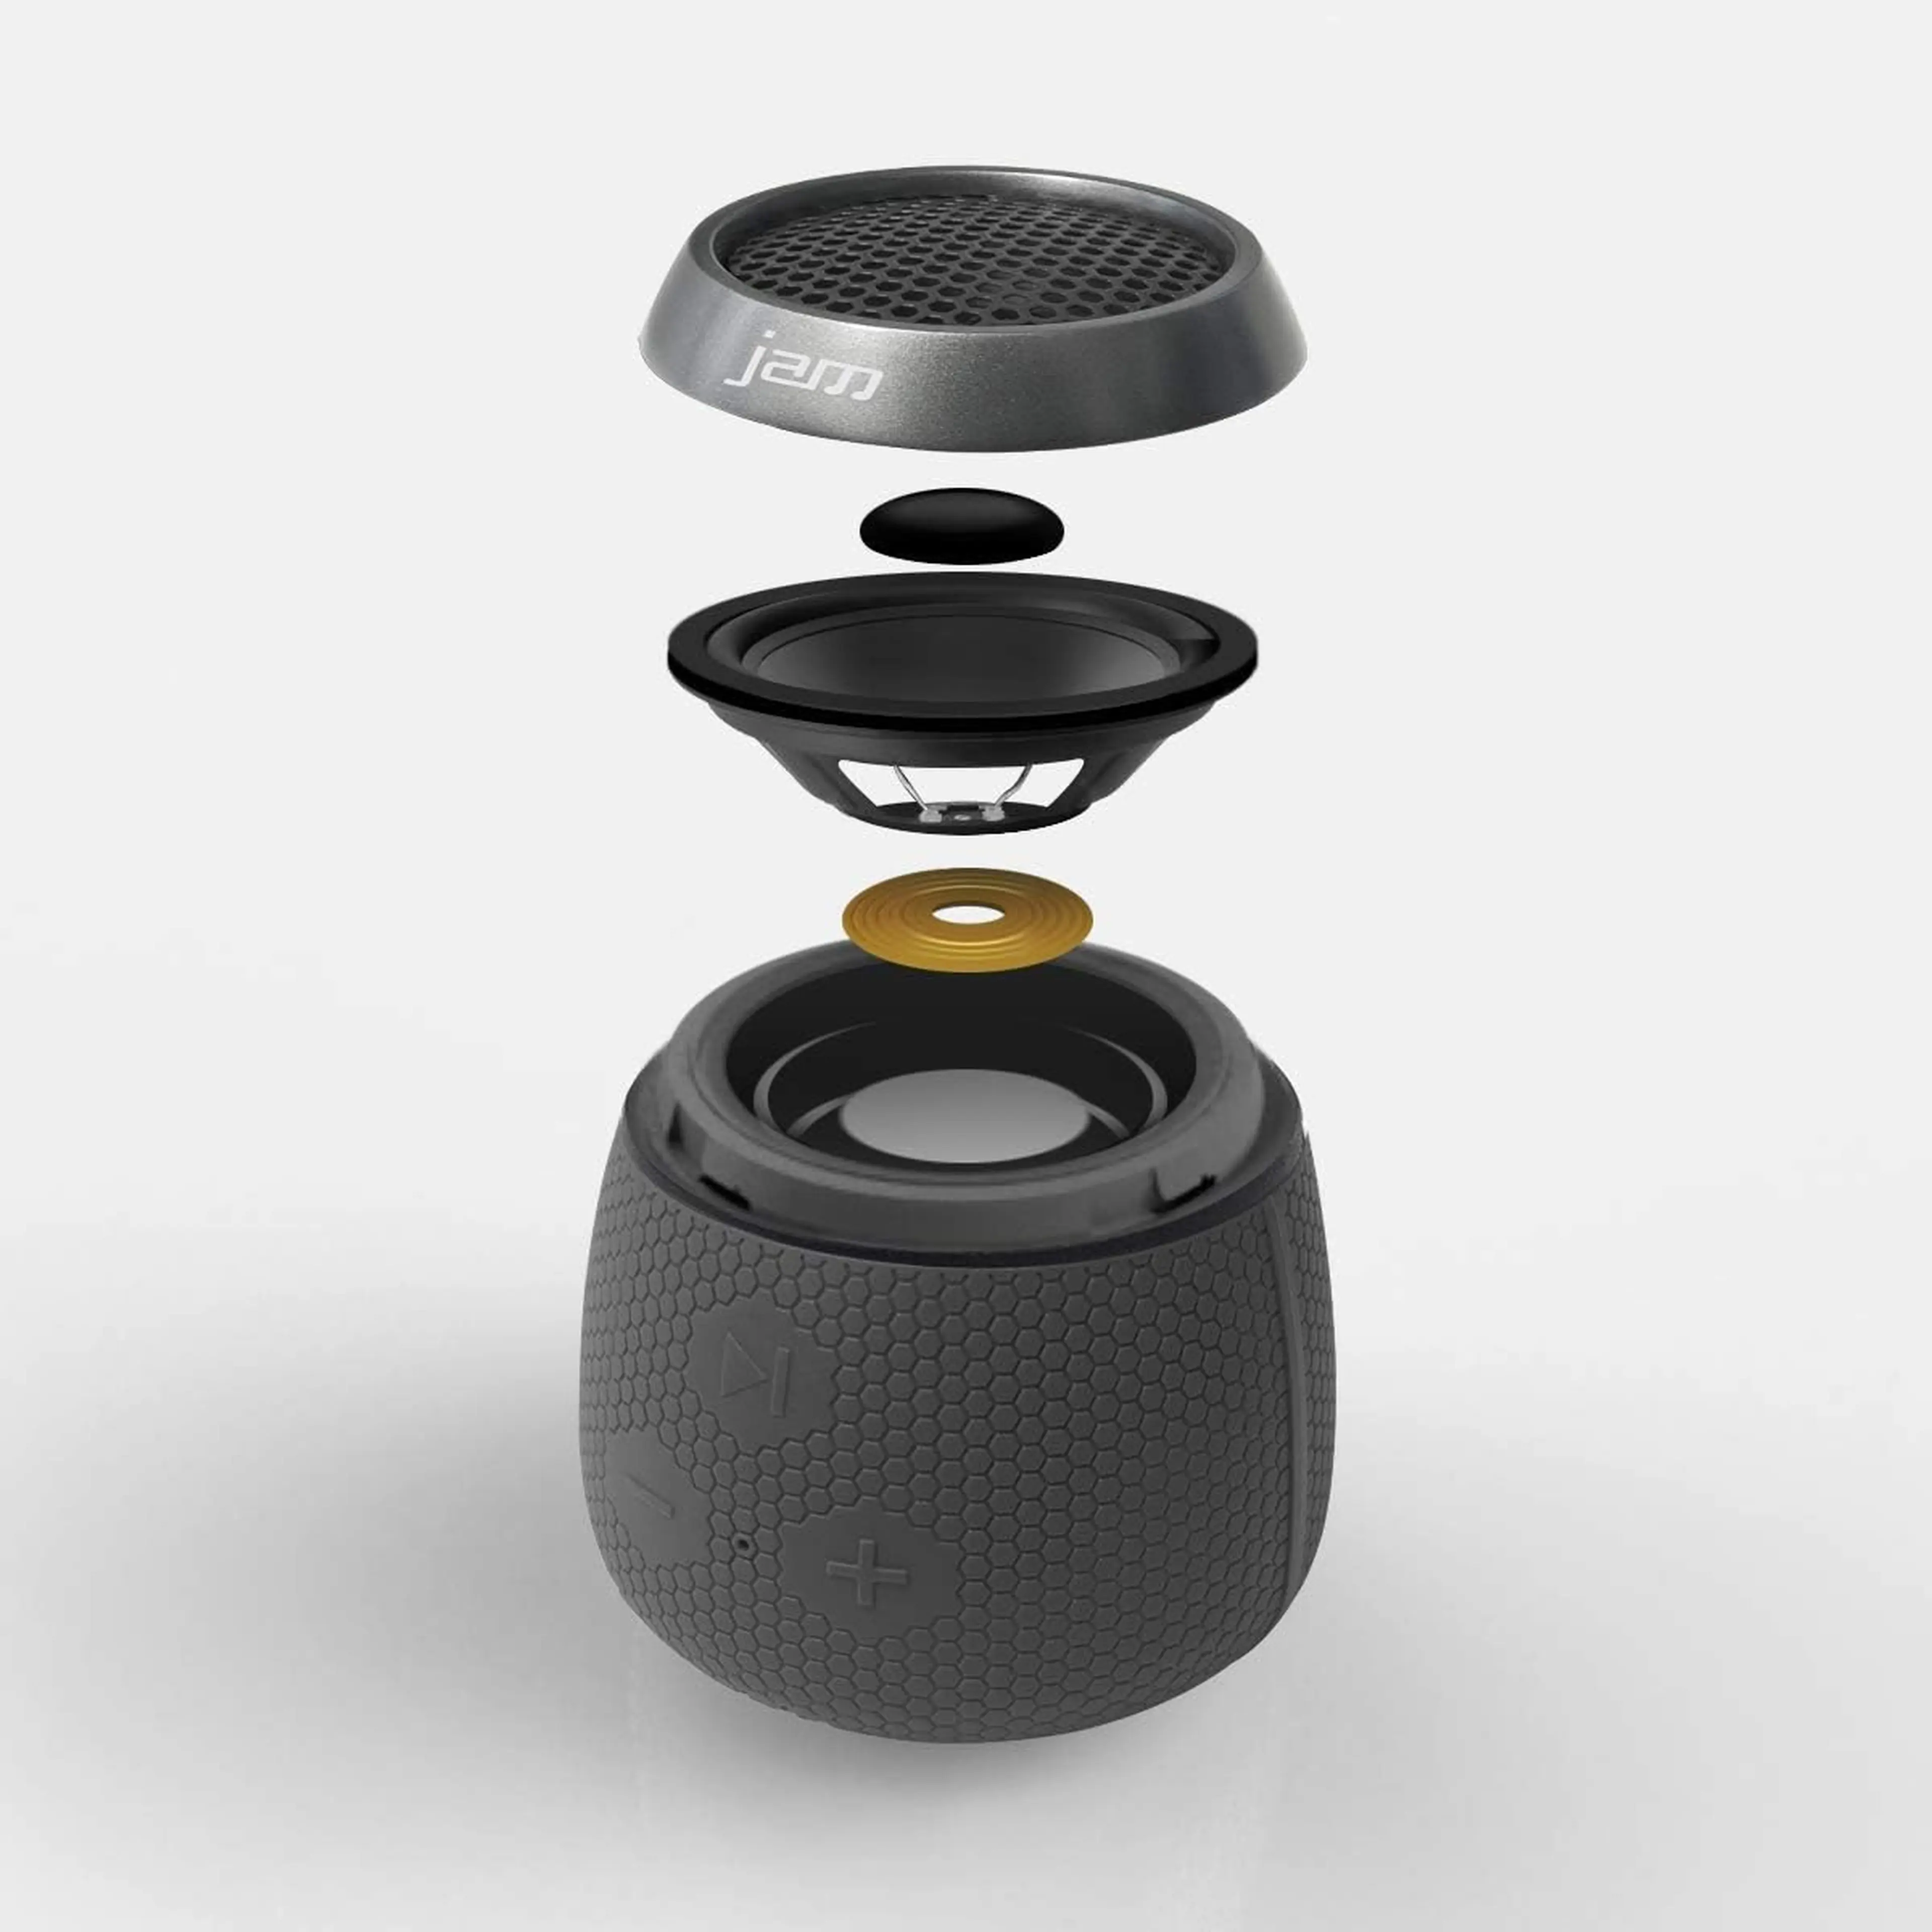 6. Boxa portabila JAM Replay Bluetooth Wireless Speaker - Neagra